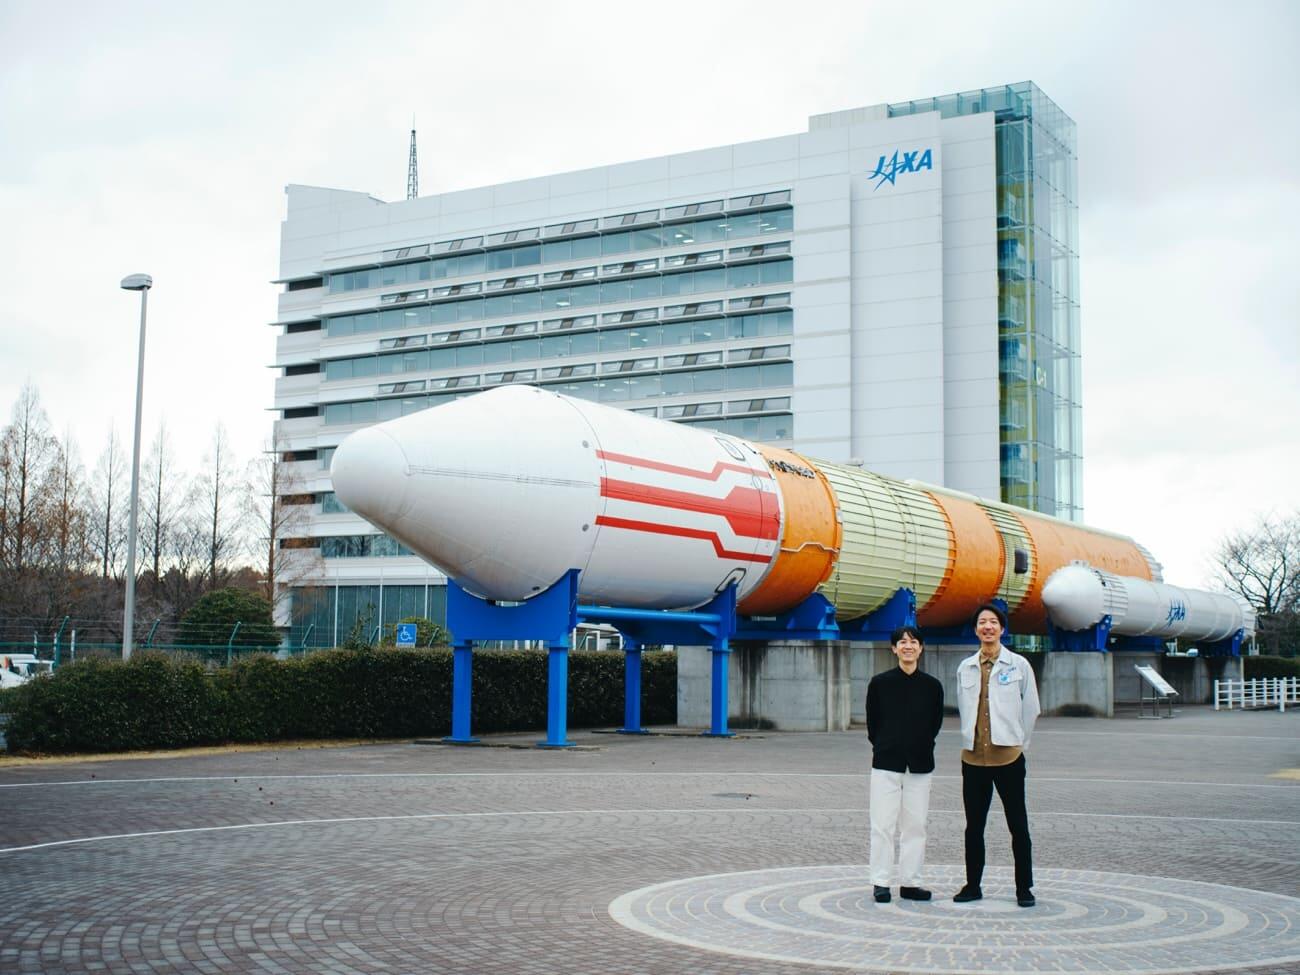 対談の最後は、筑波宇宙センター正門すぐのロケット広場にて記念撮影。